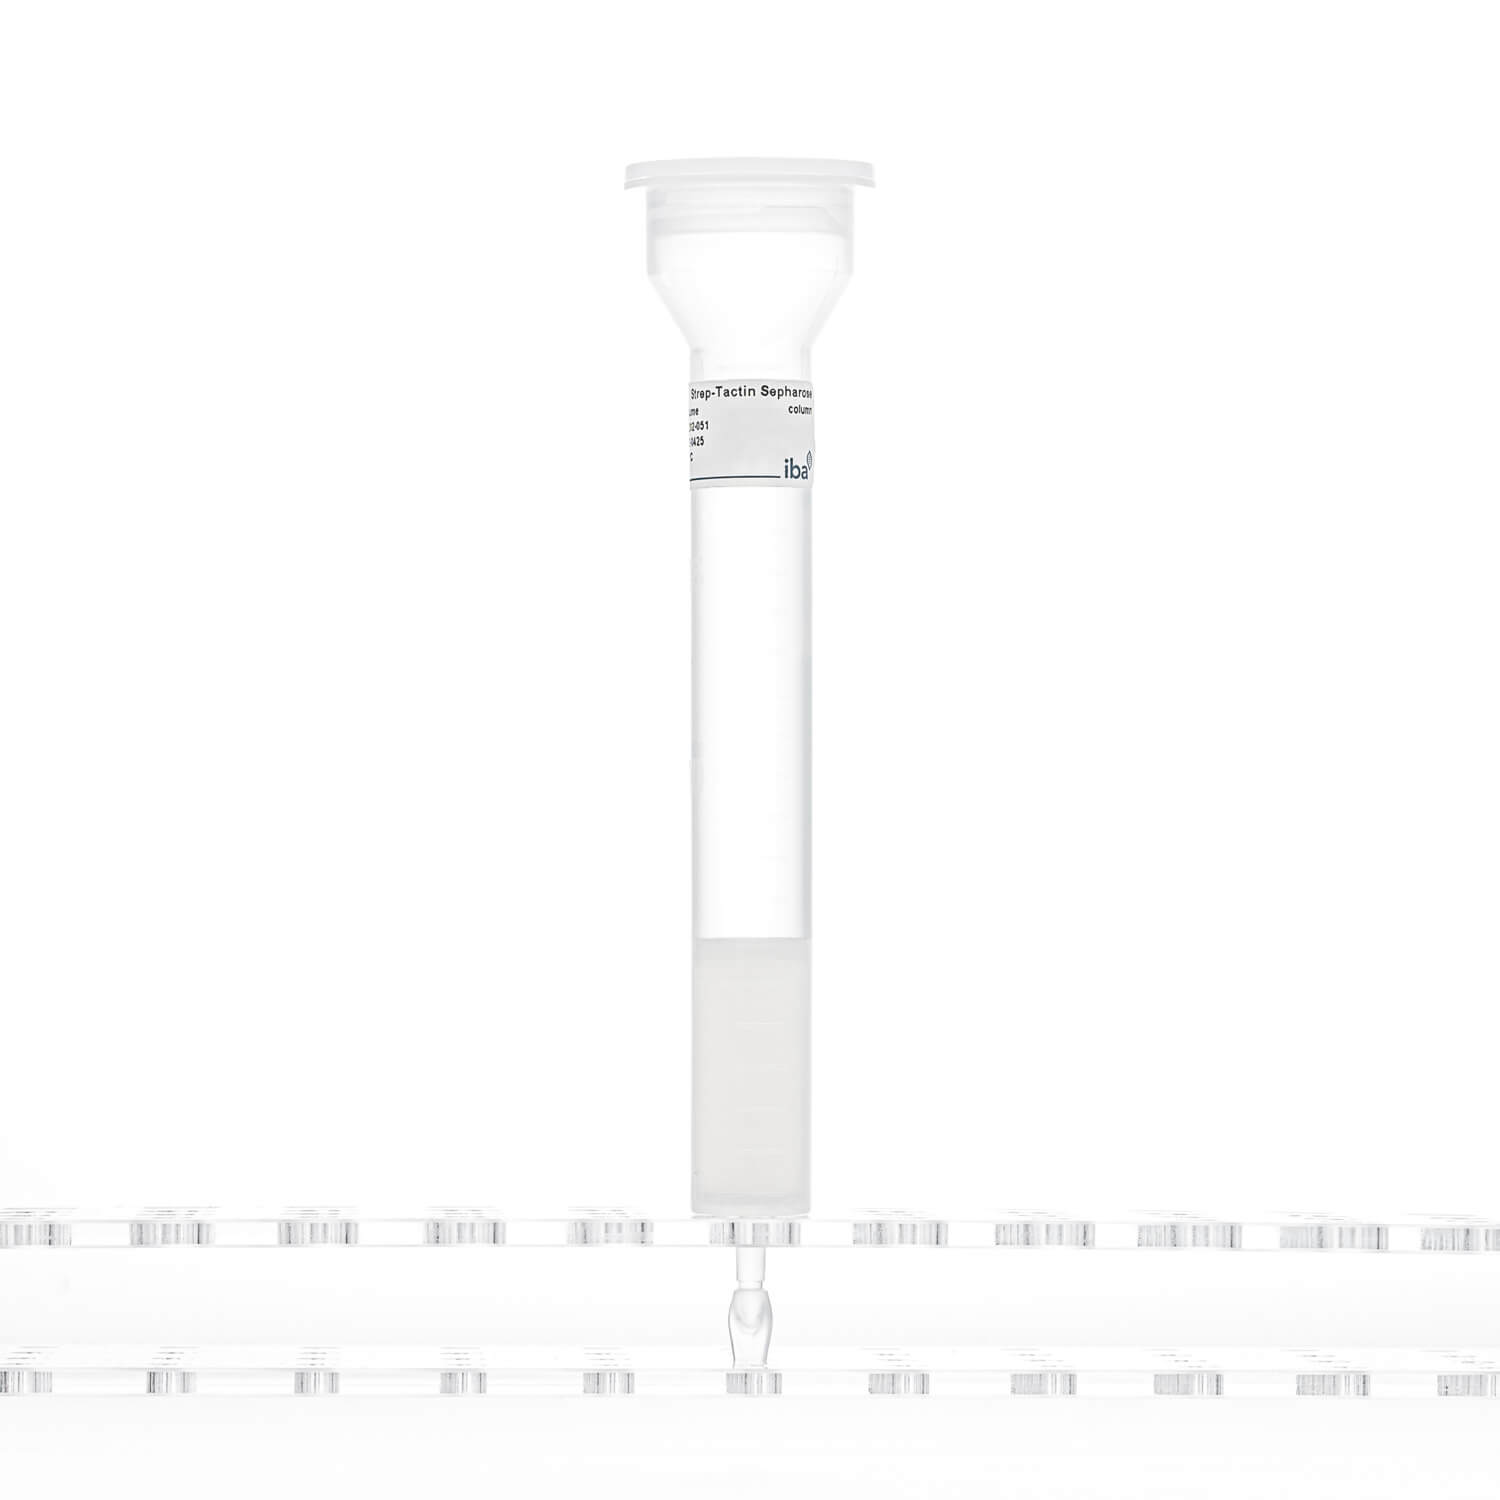 Strep-Tactin® Sepharose® column